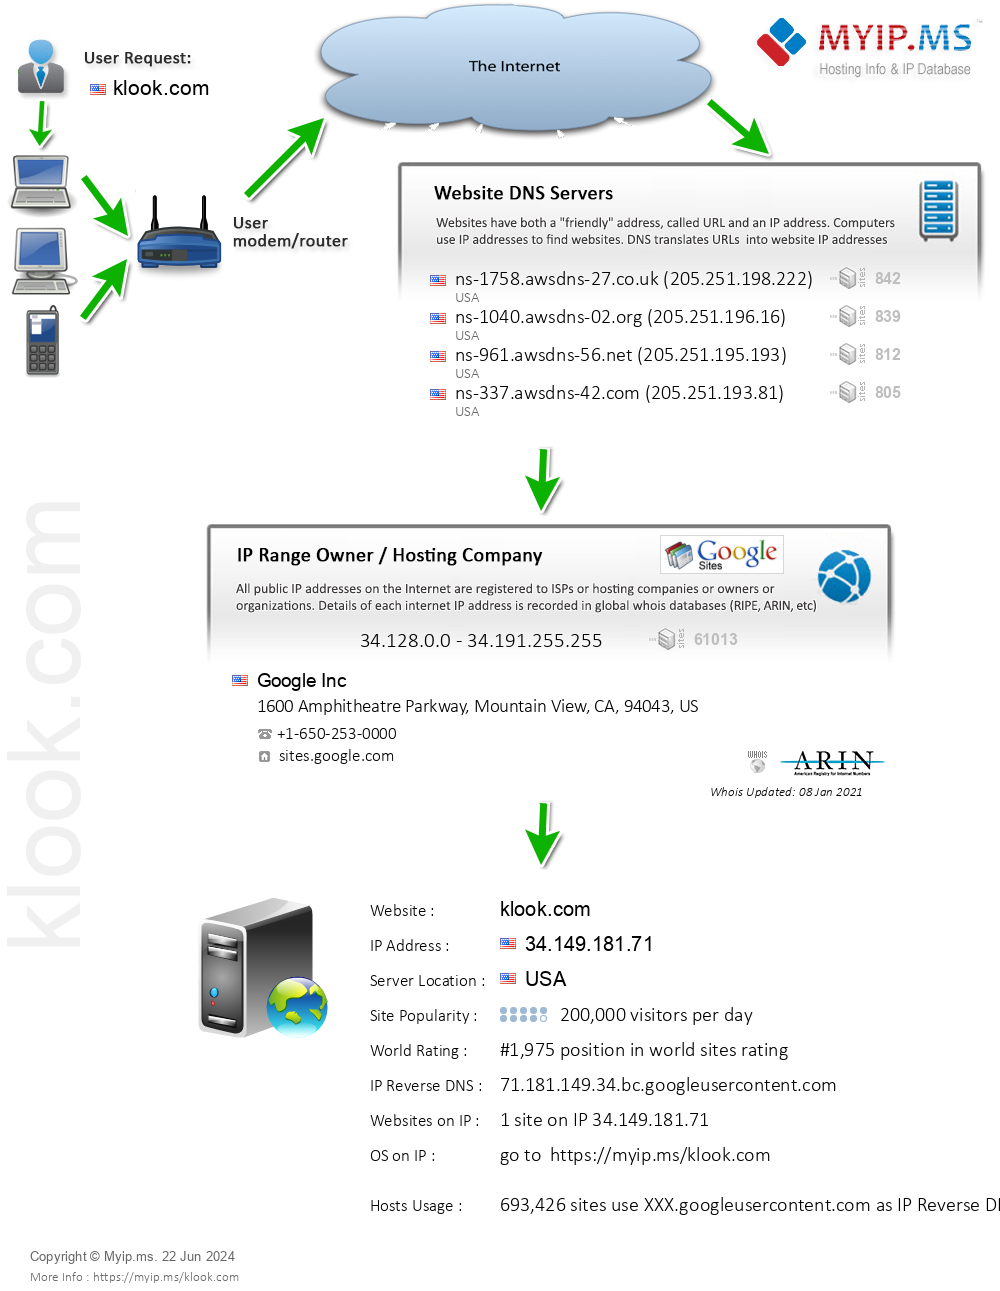 Klook.com - Website Hosting Visual IP Diagram